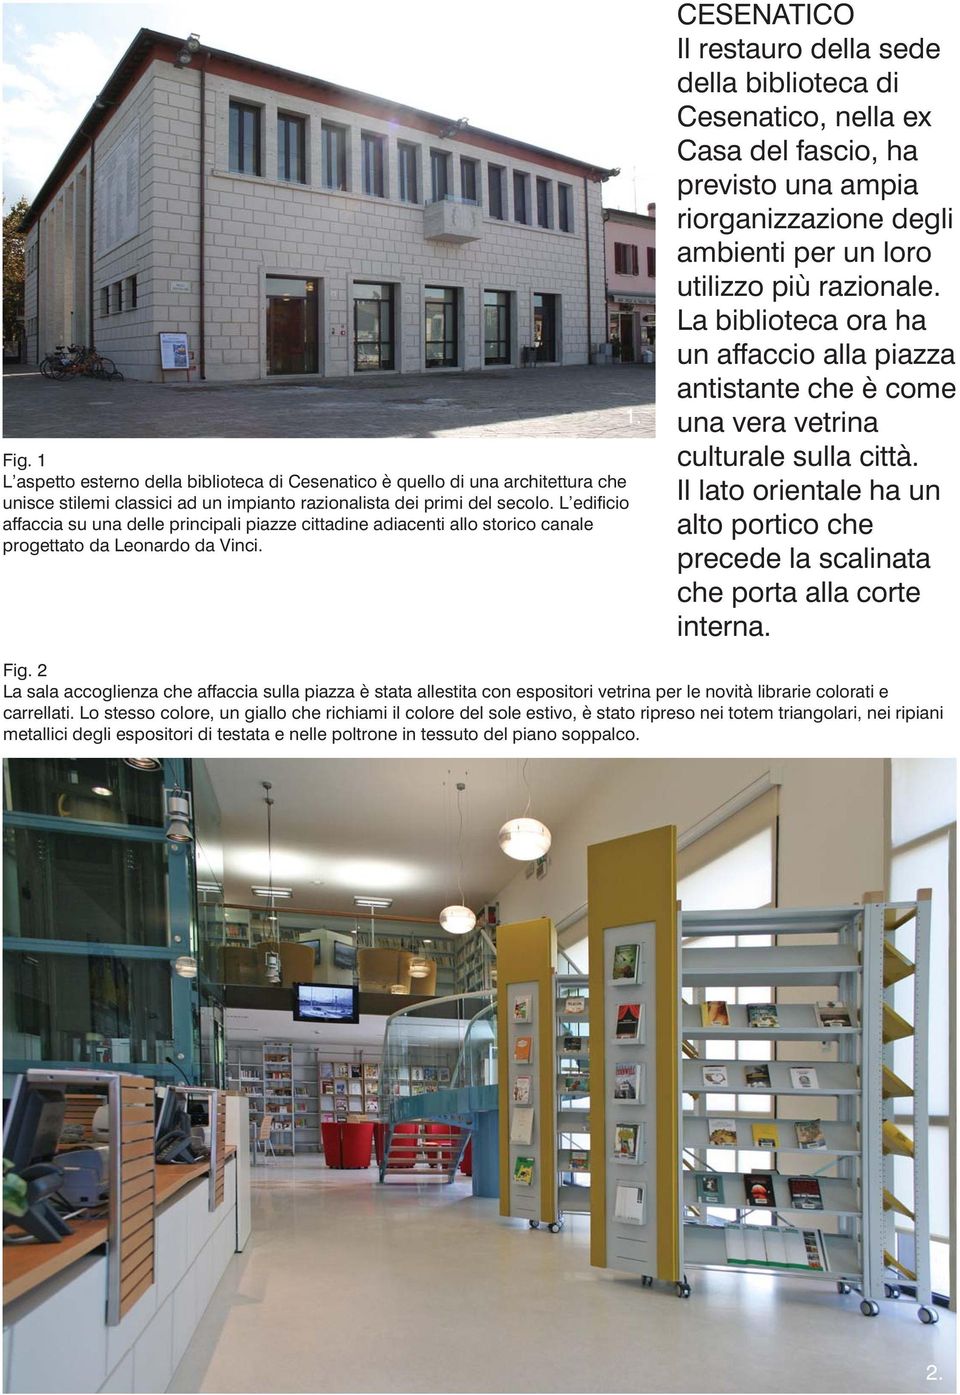 CESENATICO Il restauro della sede della biblioteca di Cesenatico, nella ex Casa del fascio, ha previsto una ampia riorganizzazione degli ambienti per un loro utilizzo più razionale.